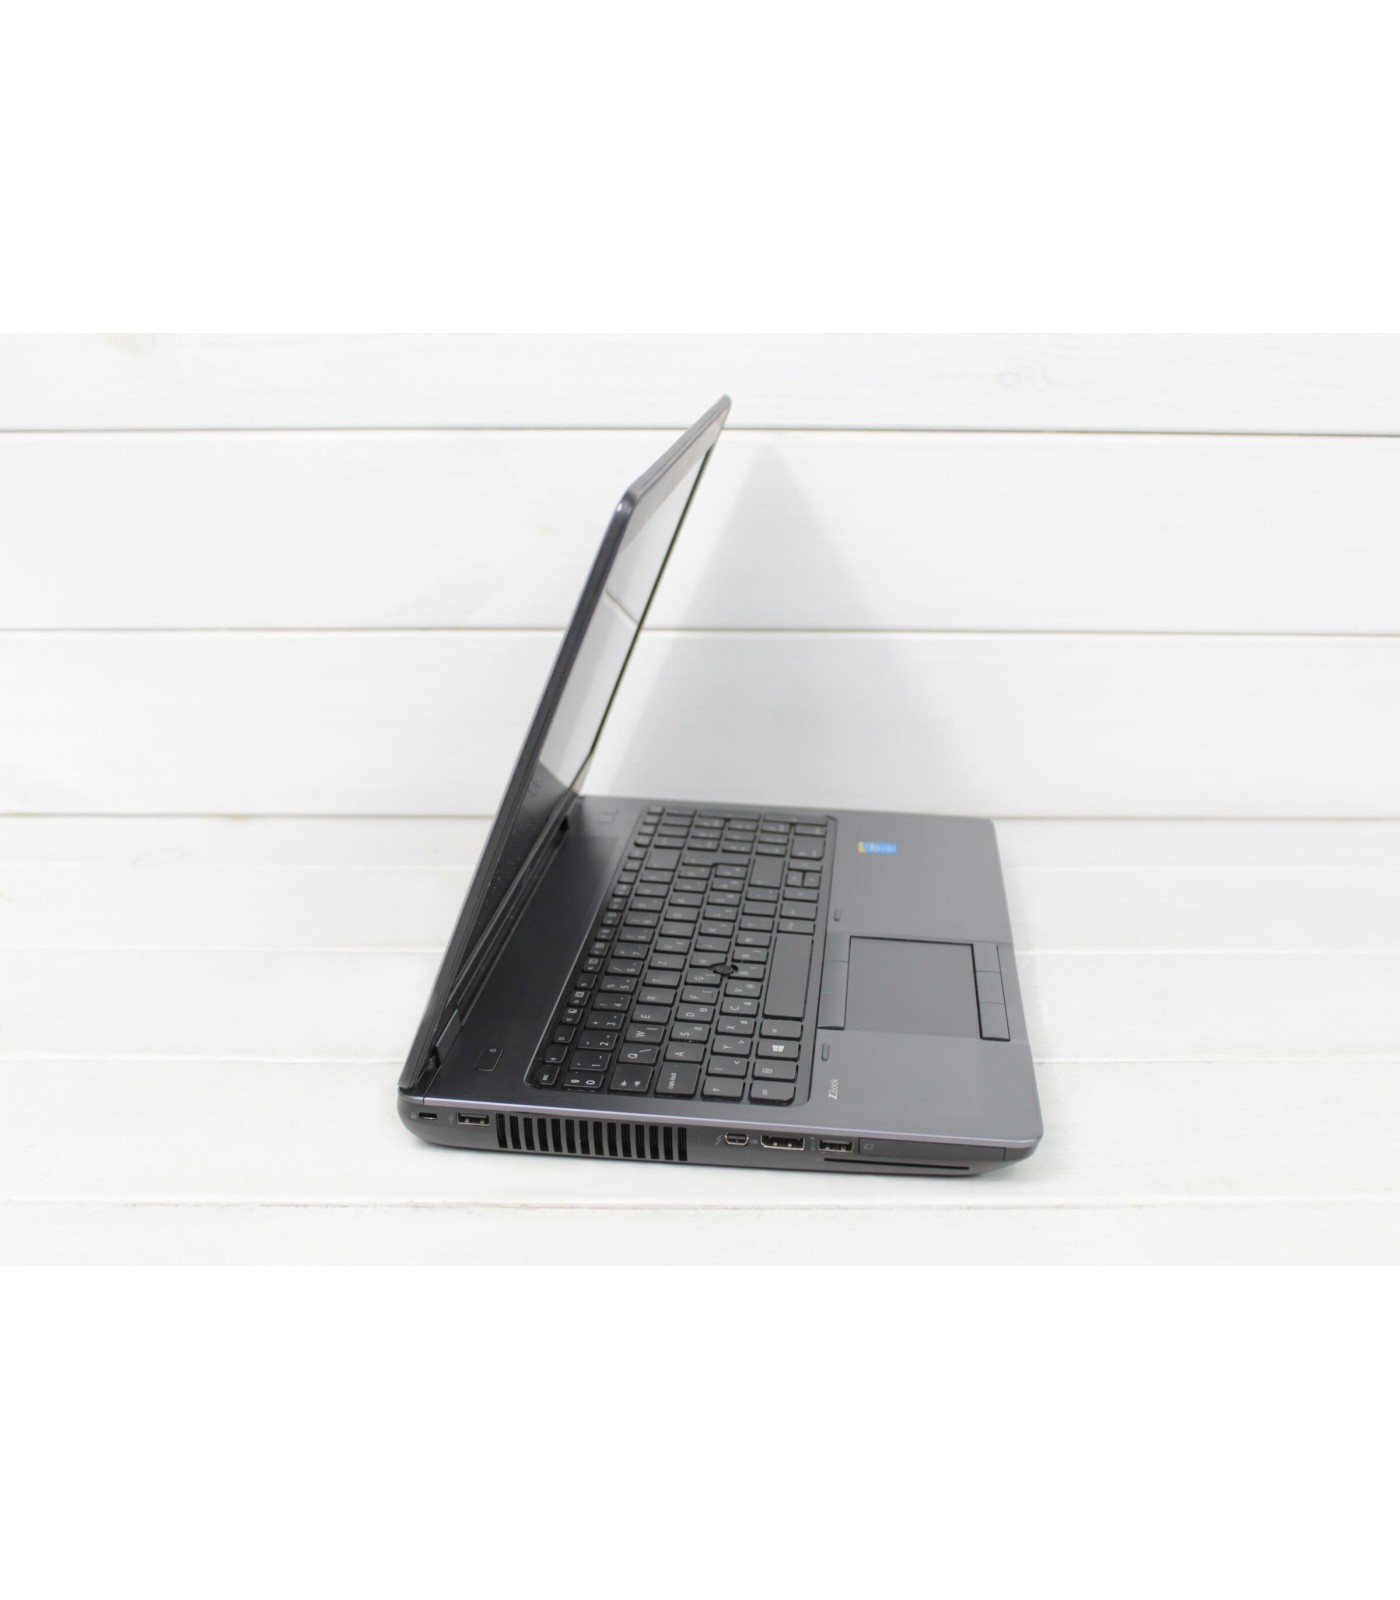 Poleasingowy laptop HP Zbook 15 G2 z Intel Core i7-4810MQ i kartą graficzną Nvidia Quadro K2100M, Klasa A.